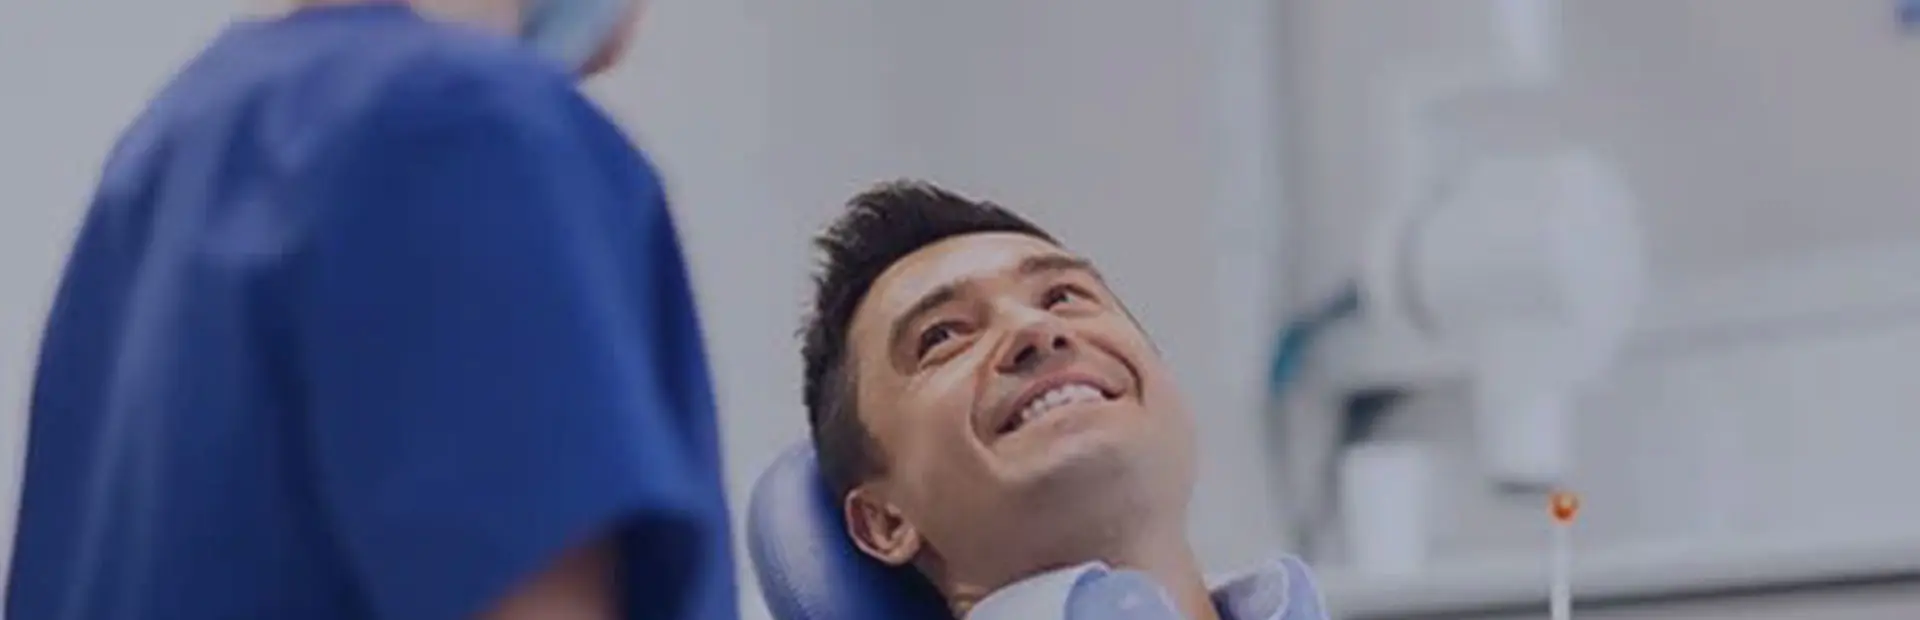 Un hombre de unos 30 años sentado en la silla del dentista sonríe durante una revisión mientras su dentista le explica que el adhesivo para prótesis dentales de Kukident ayuda a reducir las llagas.